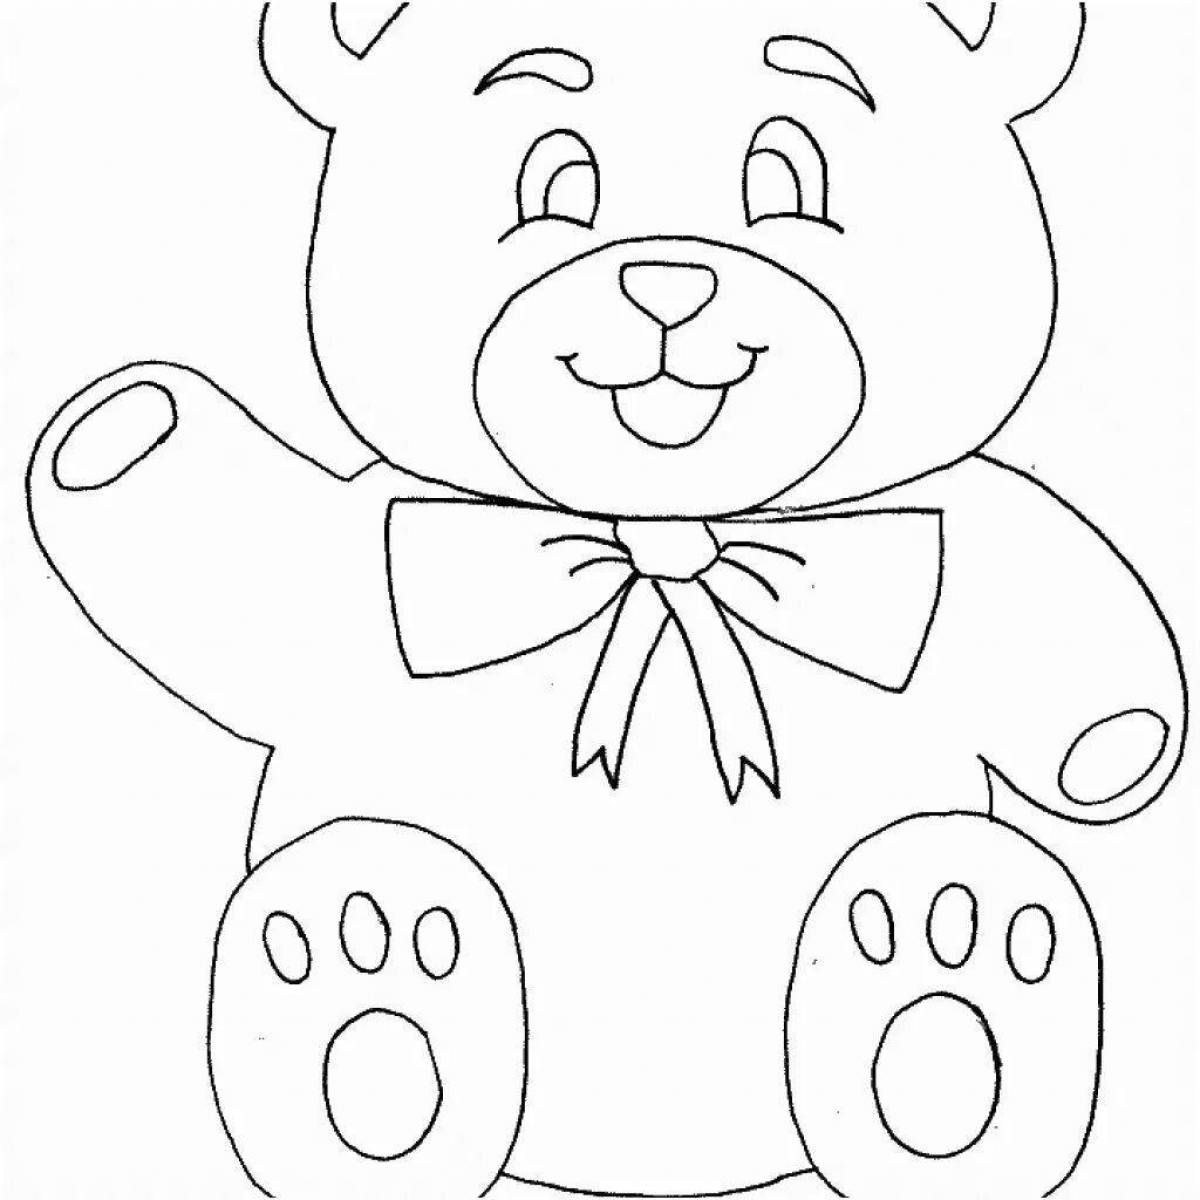 Аппликация медведь из бумаги с шаблонами